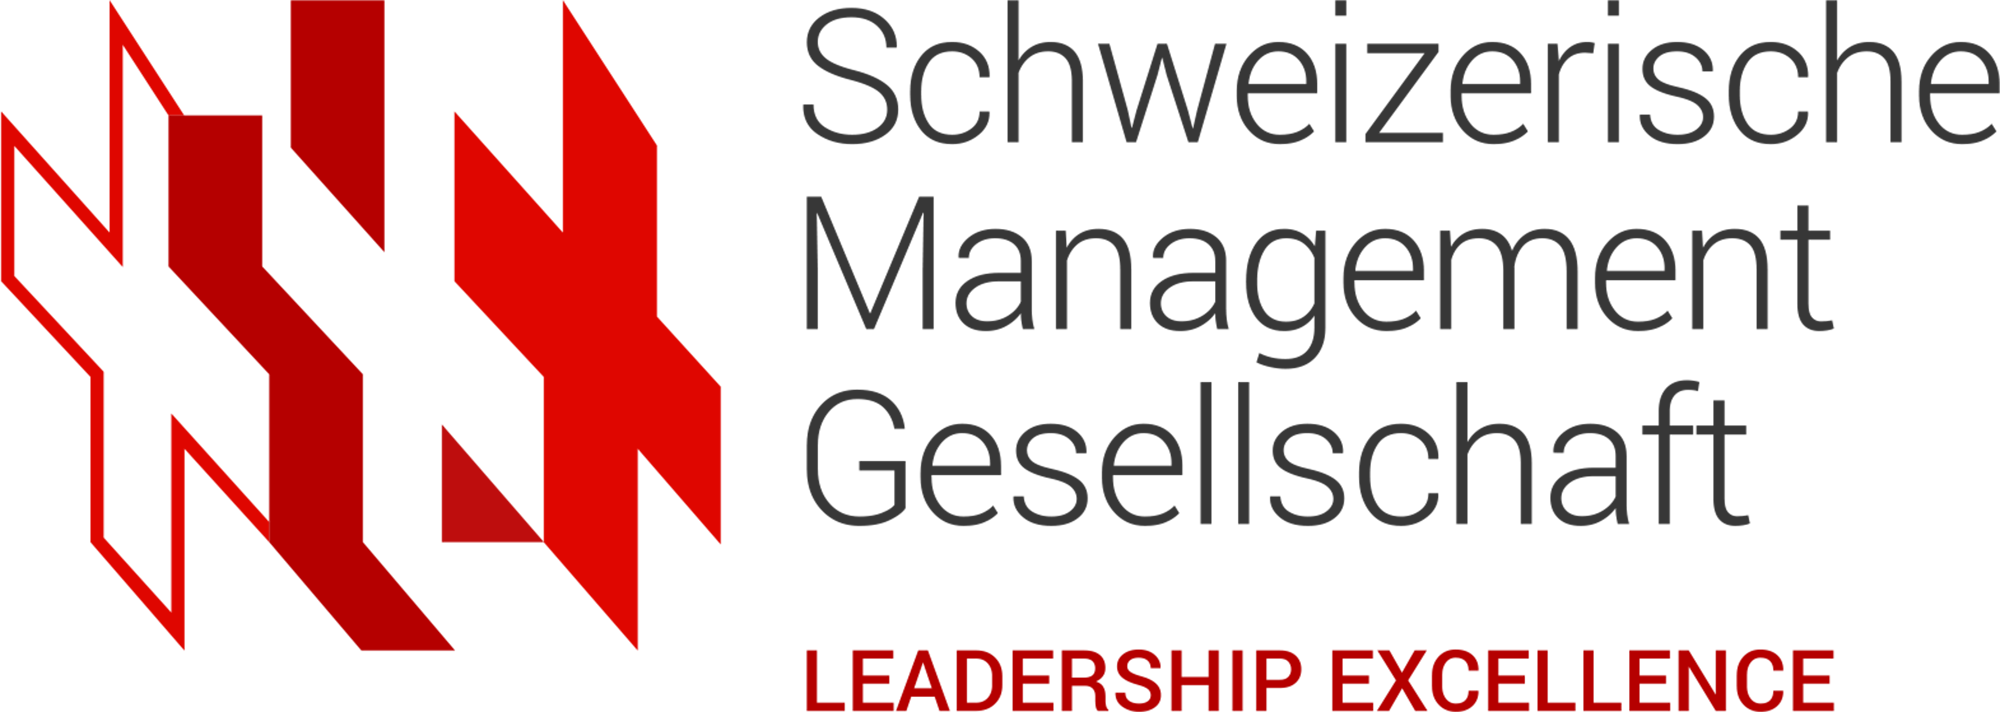 Schweizerische Management Gesellschaft